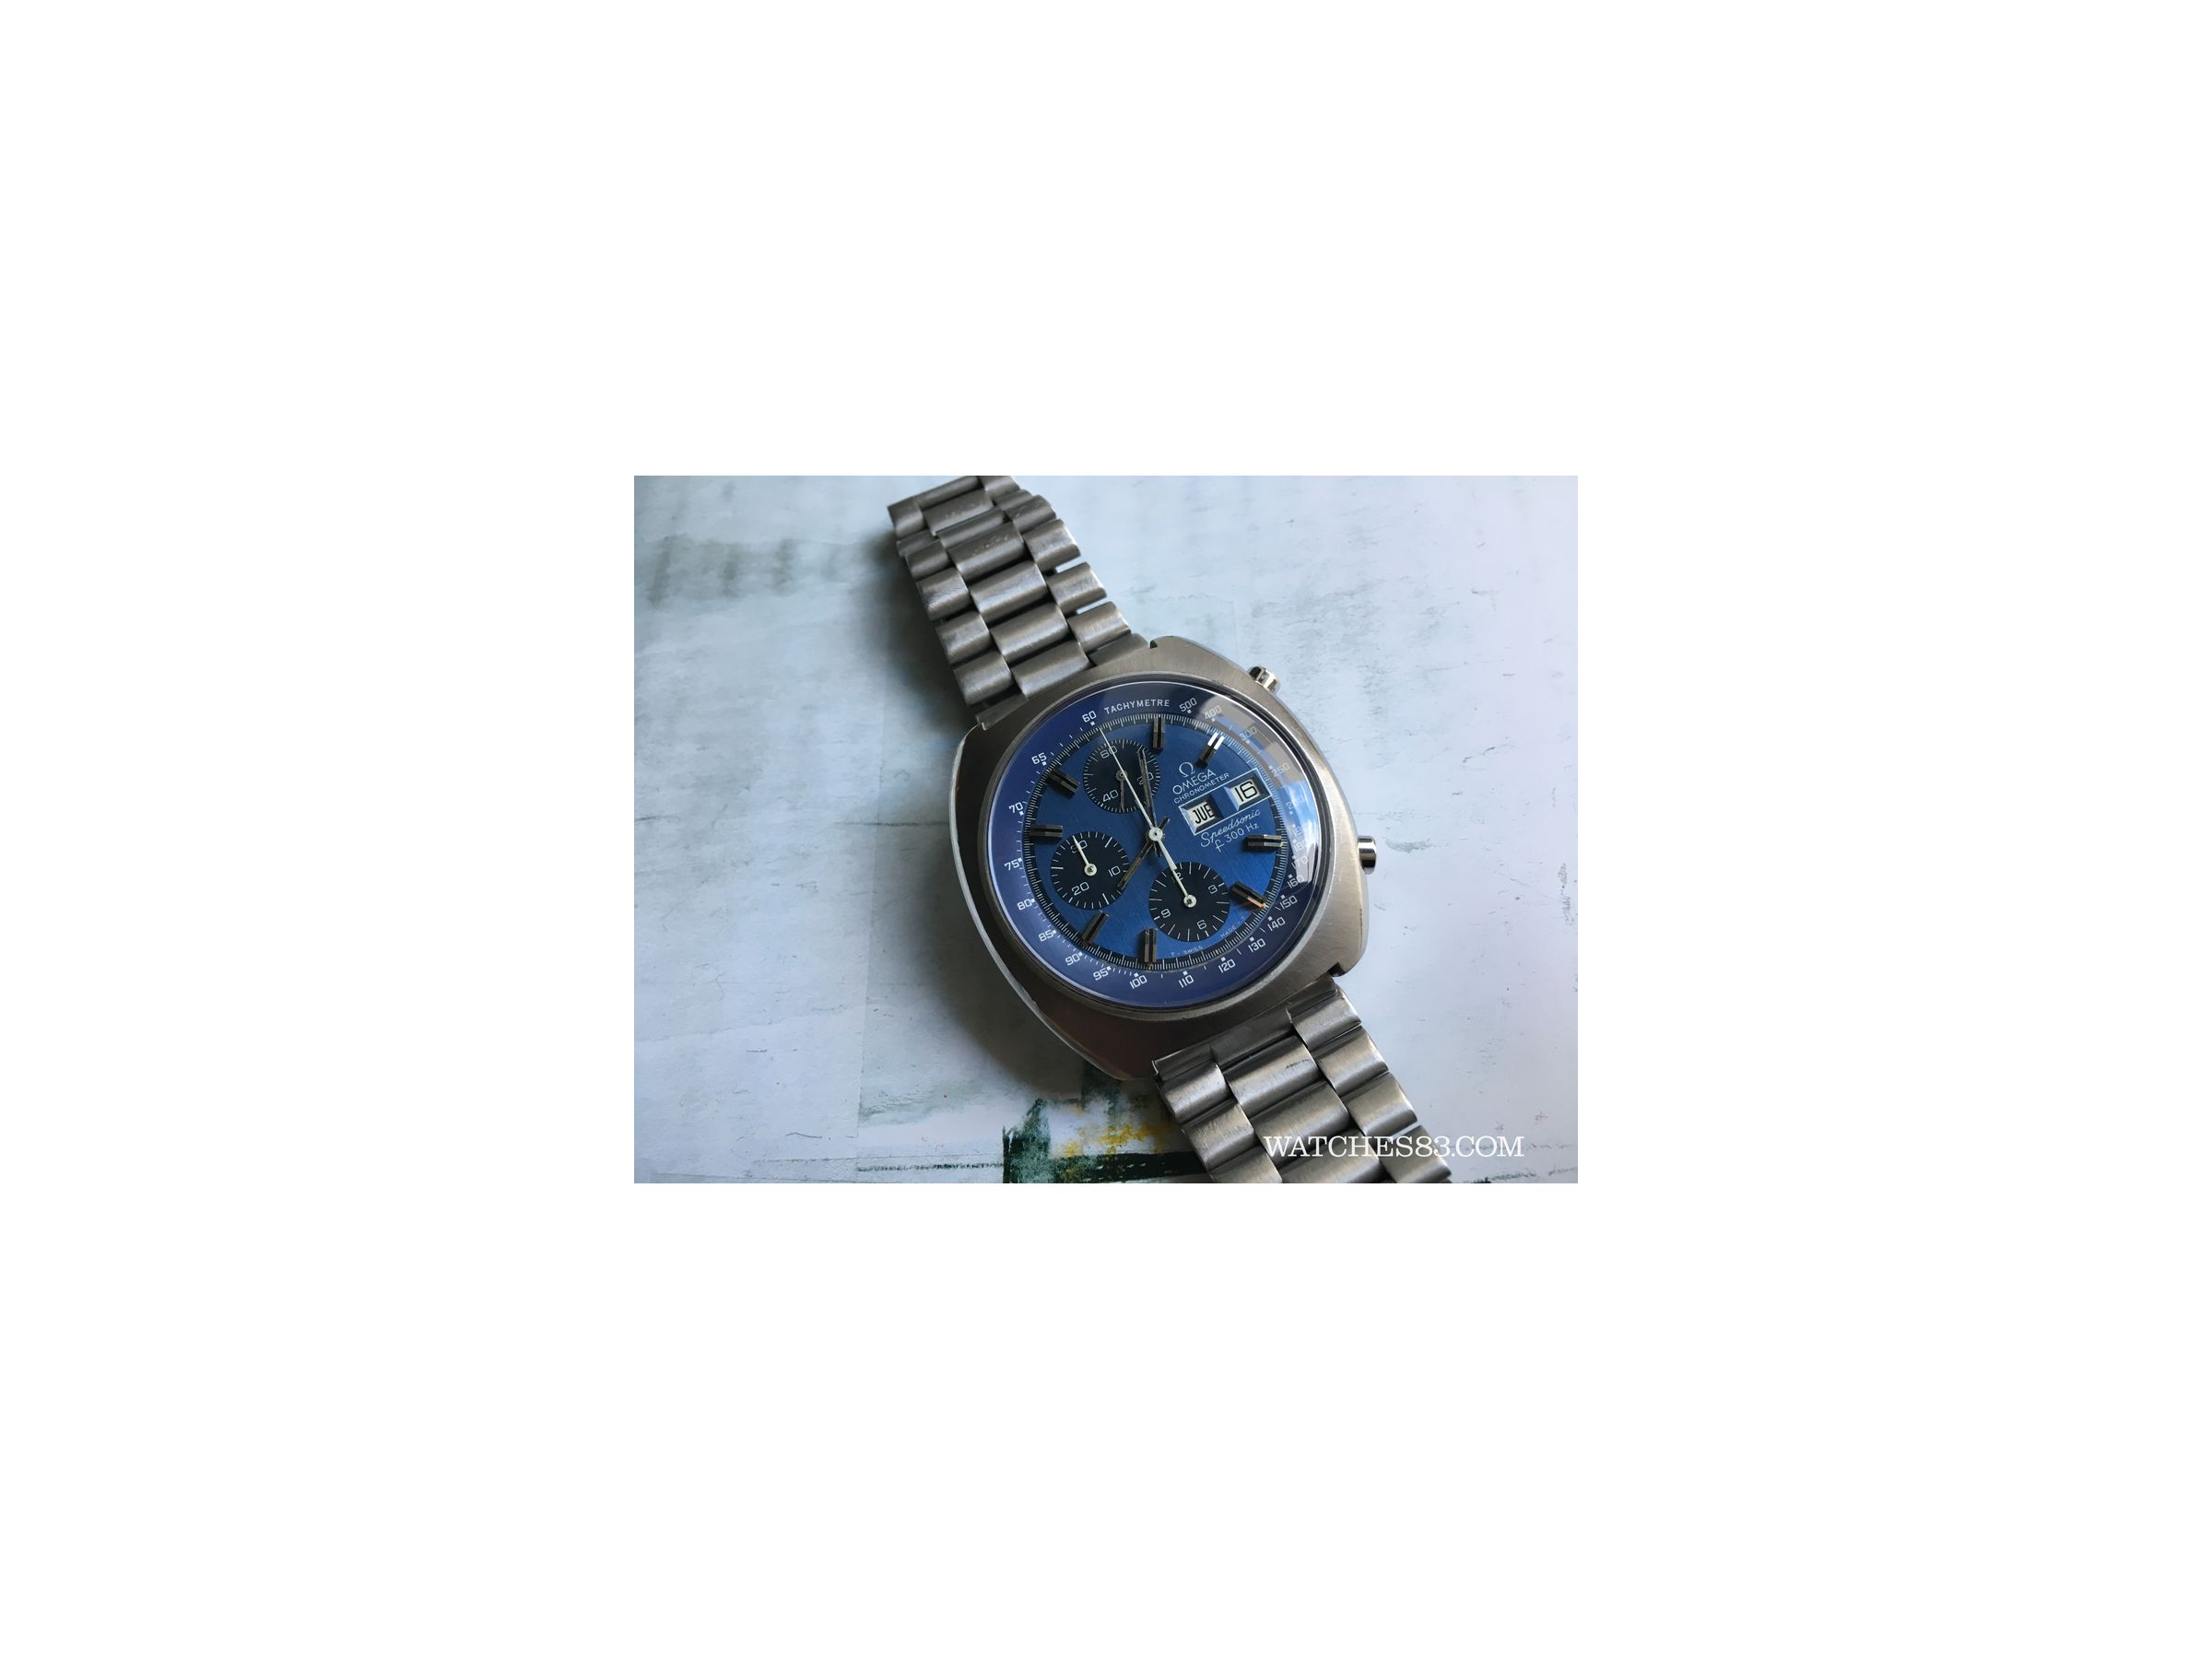 omega speedsonic f300hz chronometer